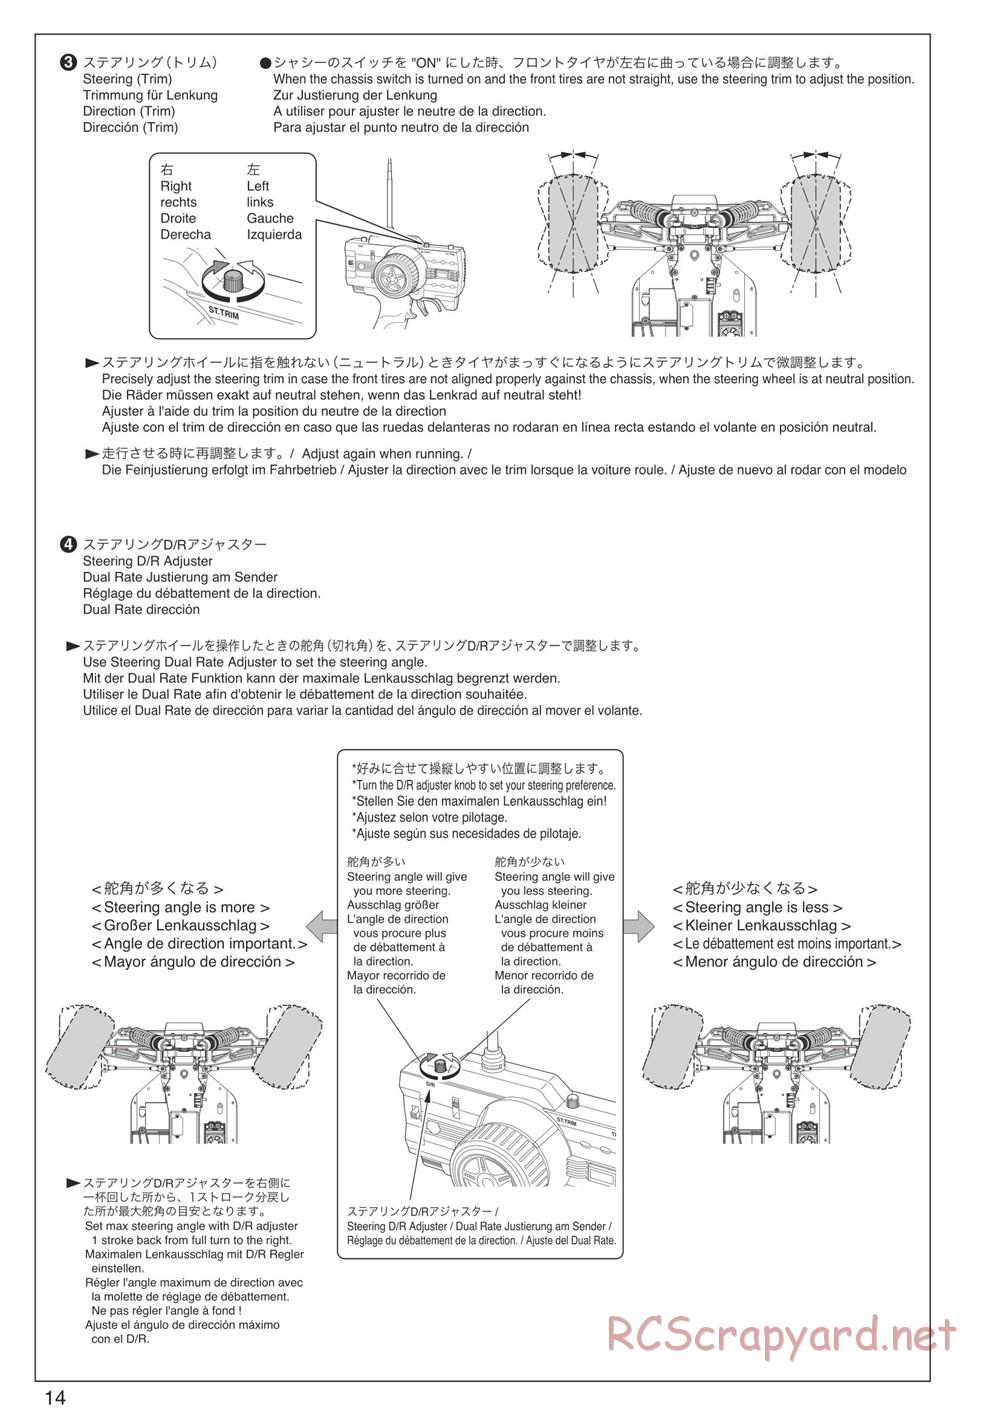 Kyosho - DBX-VE - Manual - Page 14